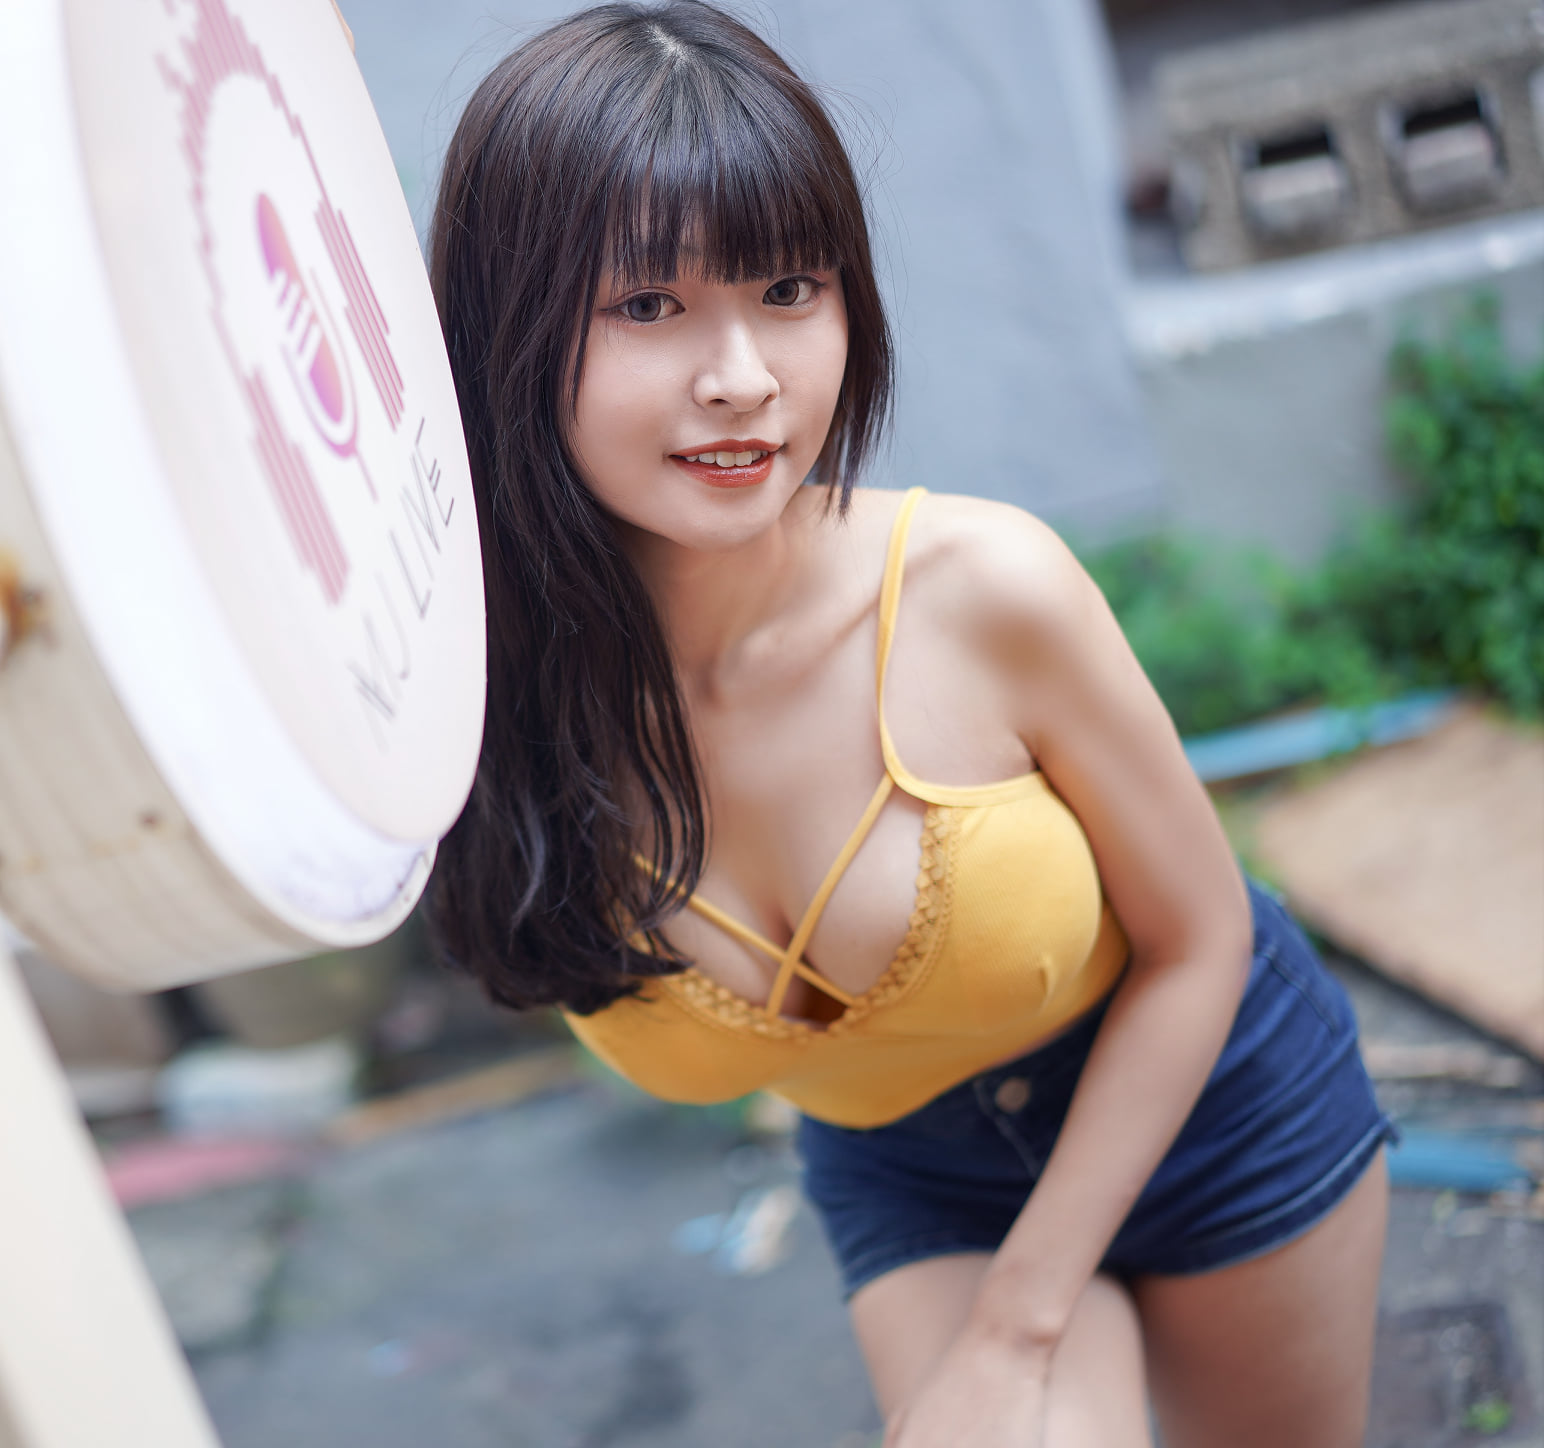 【網路收集】台灣美腿女郎-黃思云  陽光美少女外拍寫真 (一) - 貼圖 - 絲襪美腿 -